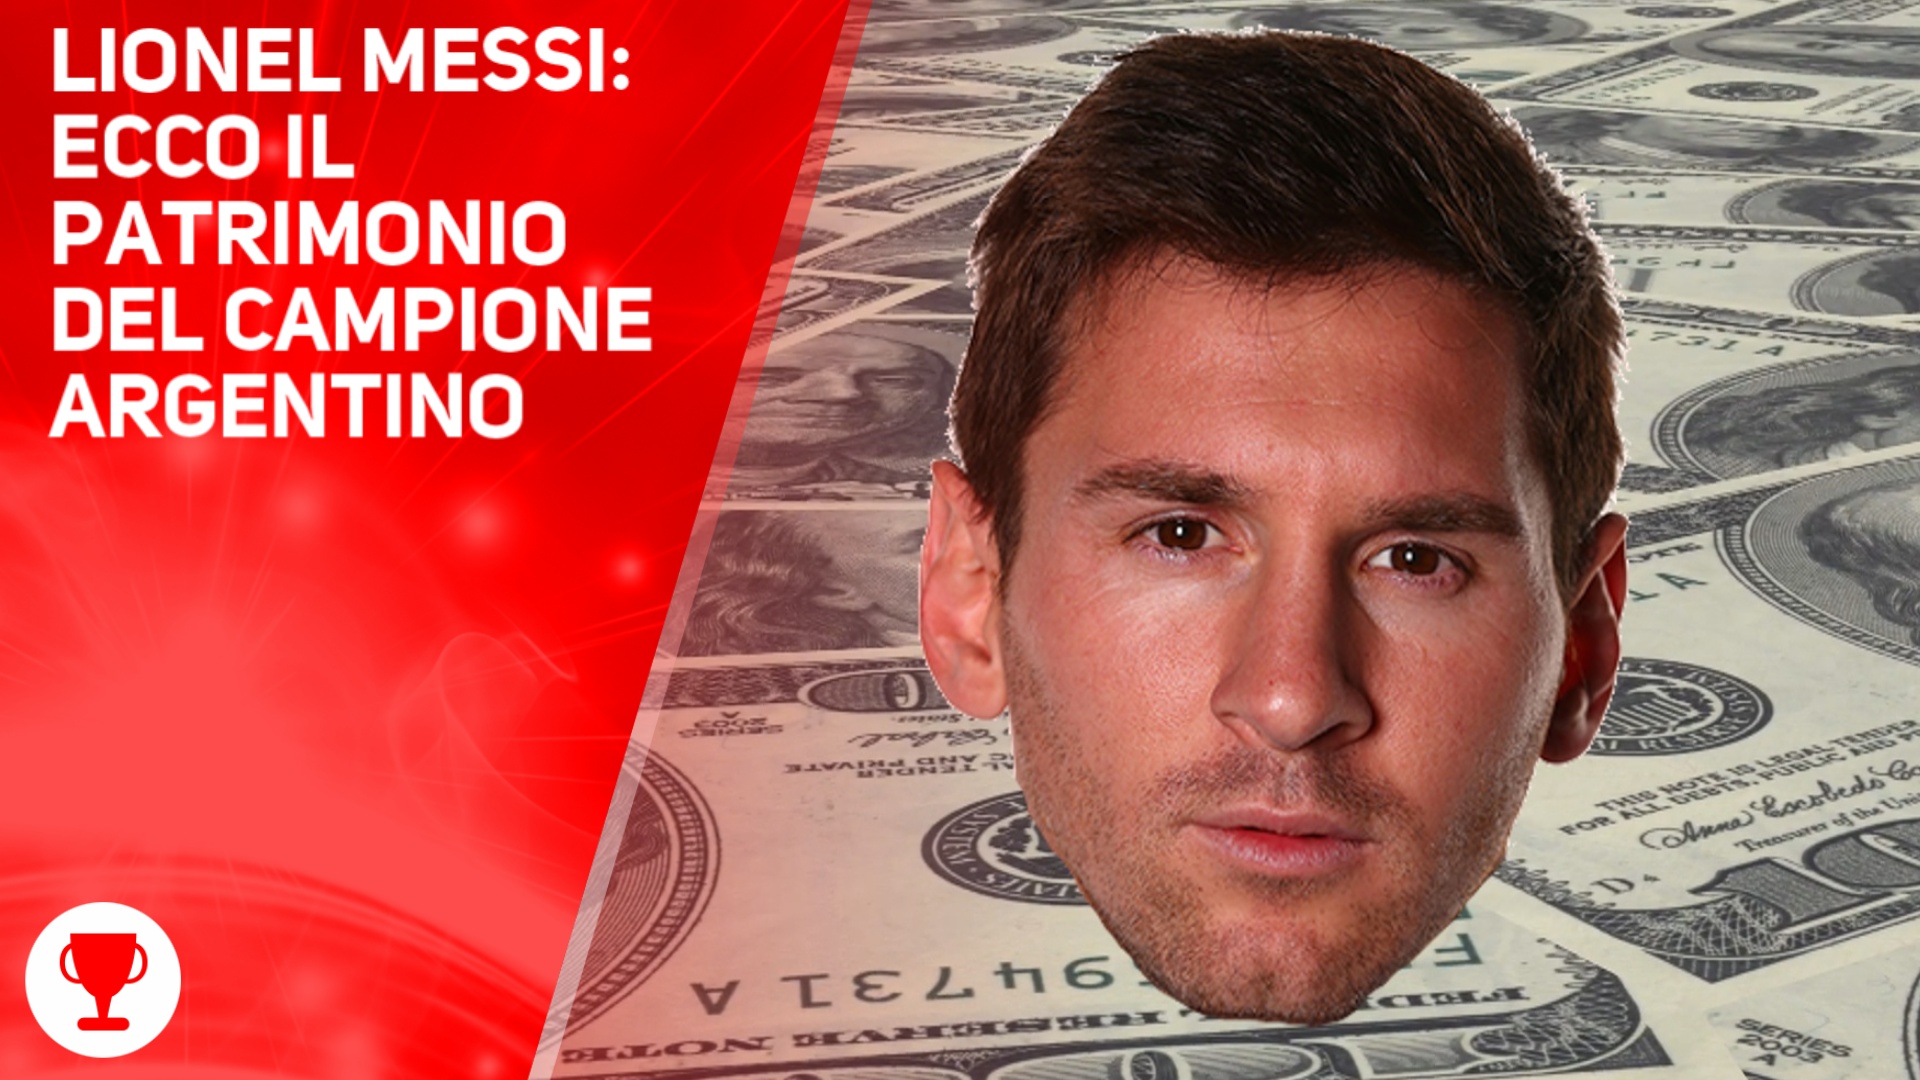 Soldi a palate: ecco quanto guadagna Lionel Messi